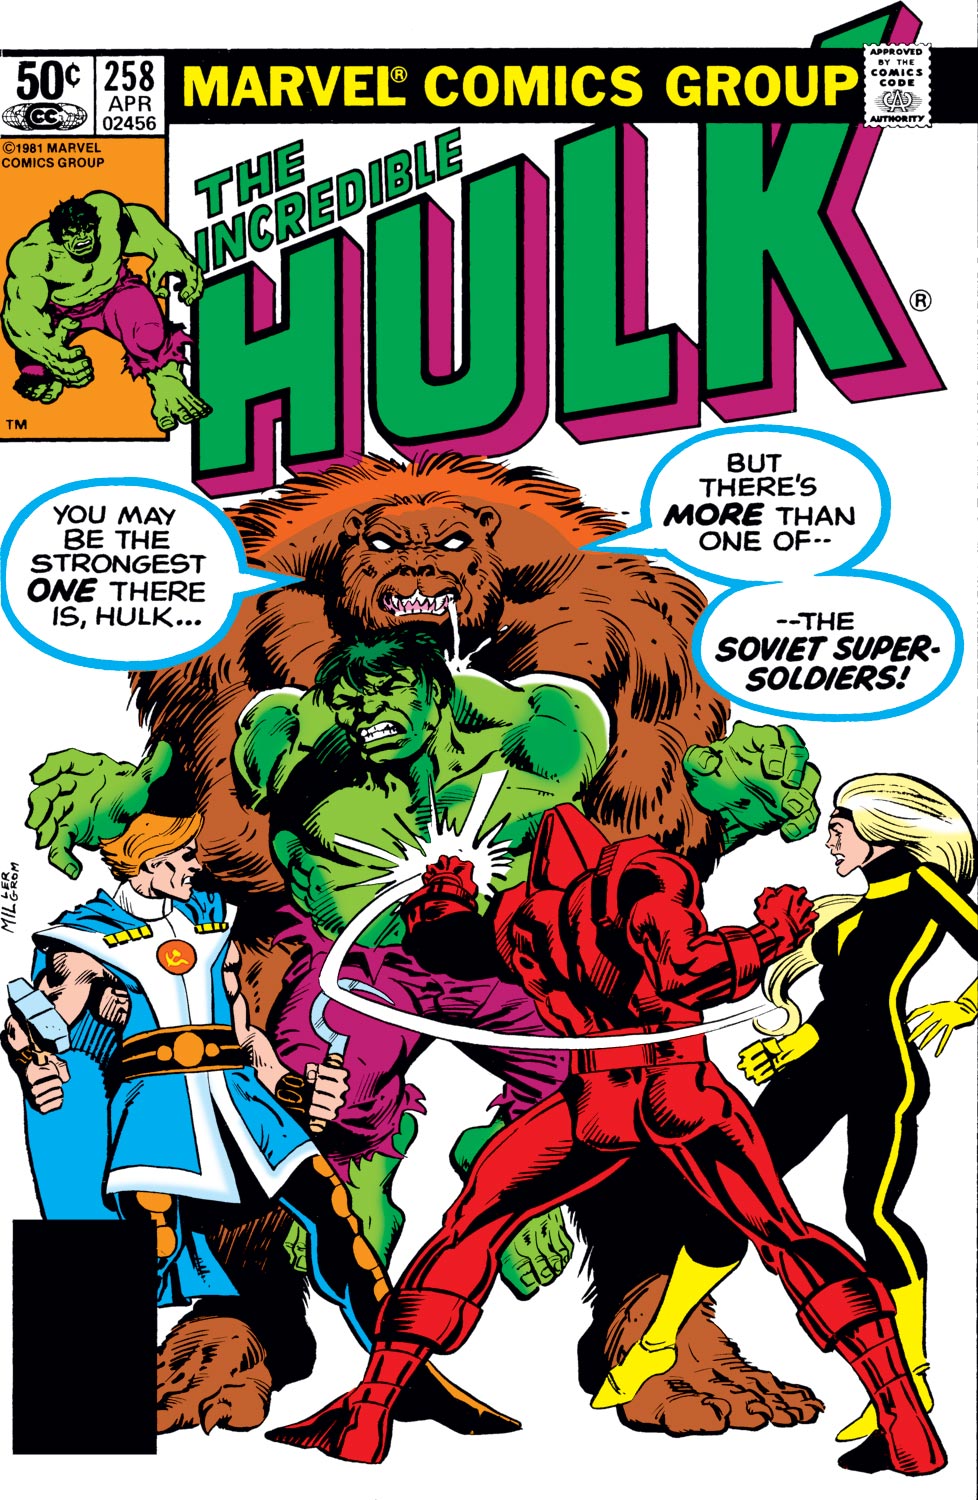 Incredible Hulk (1962) #258